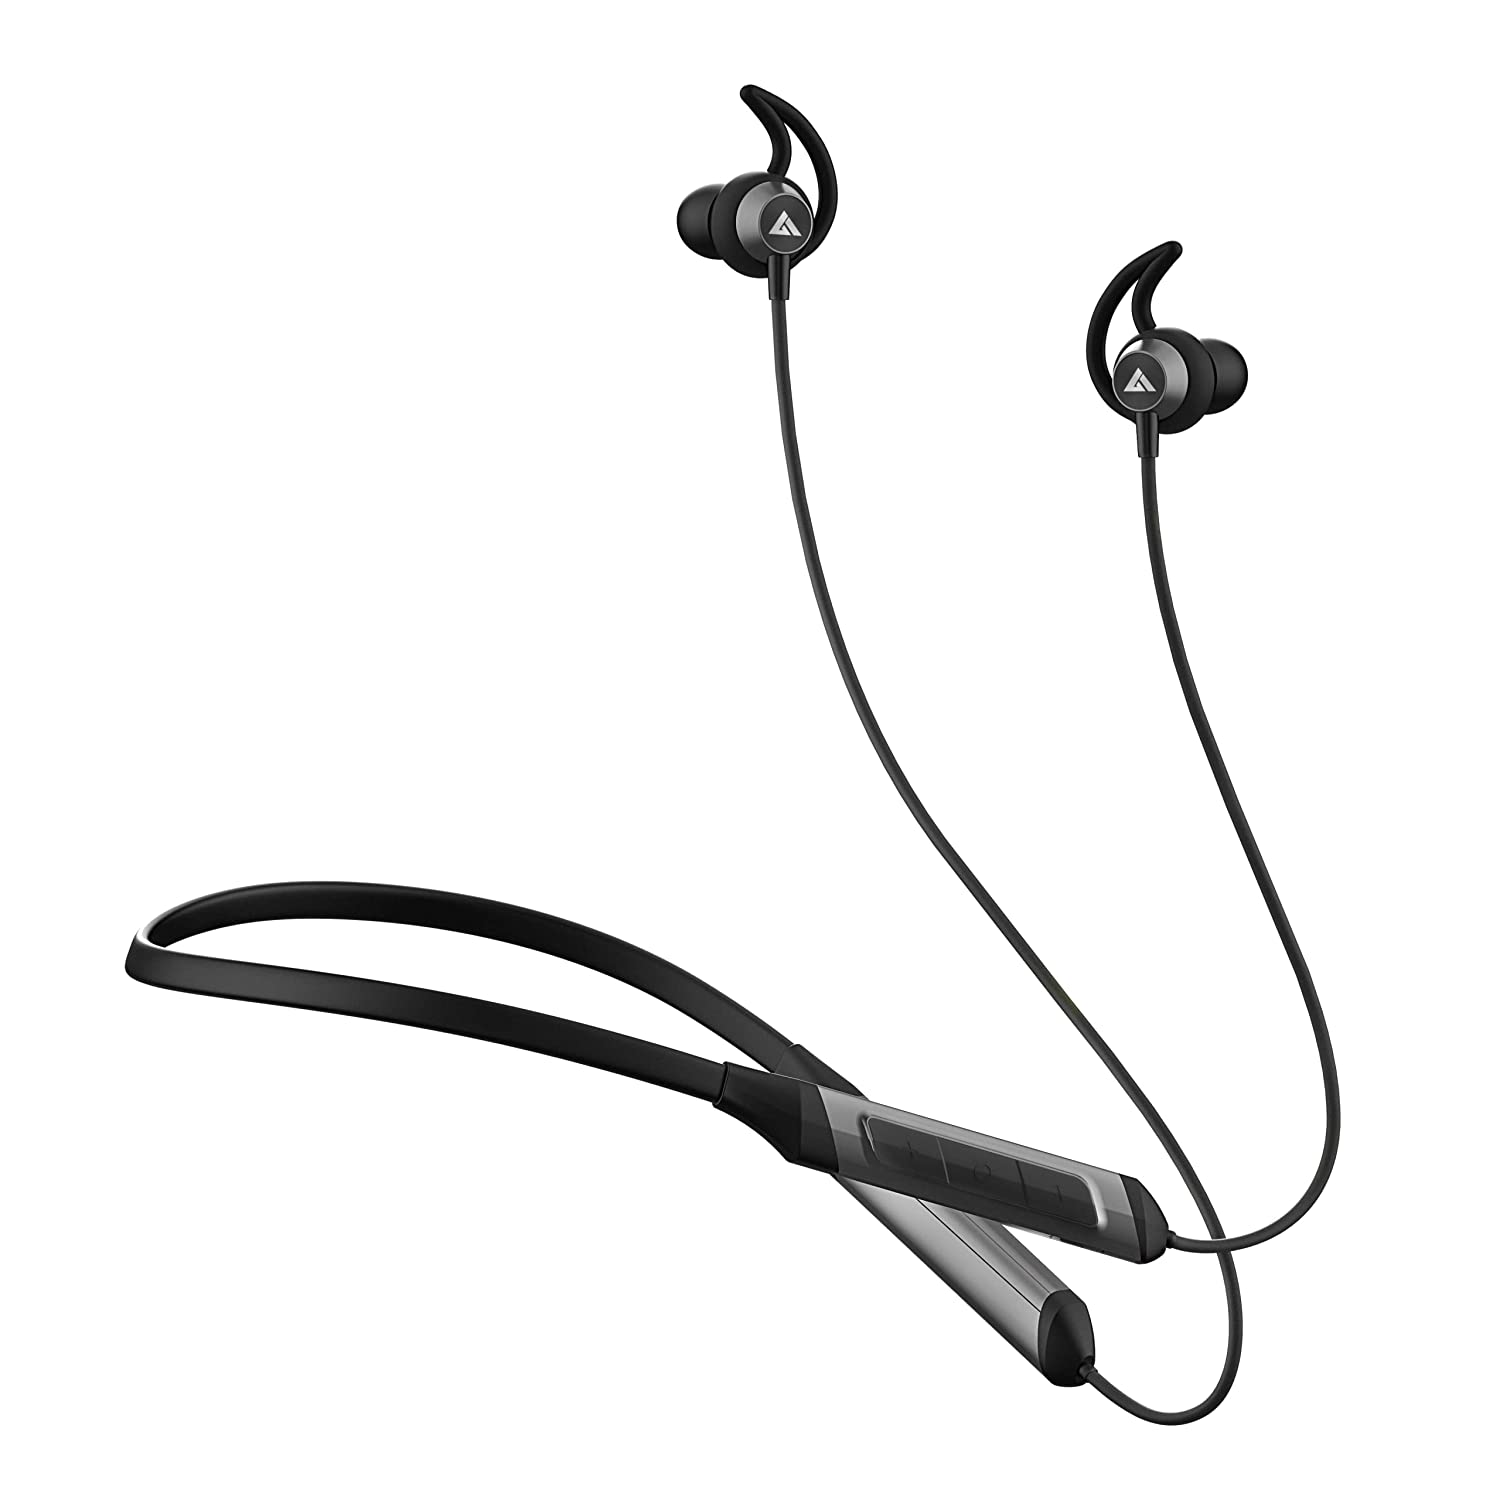 Amazon Offer: छोटी- बड़ी हर पार्टी के लिये ये बढ़िया Bluetooth Speaker सेल में खरीदने का मौका मिस ना करें